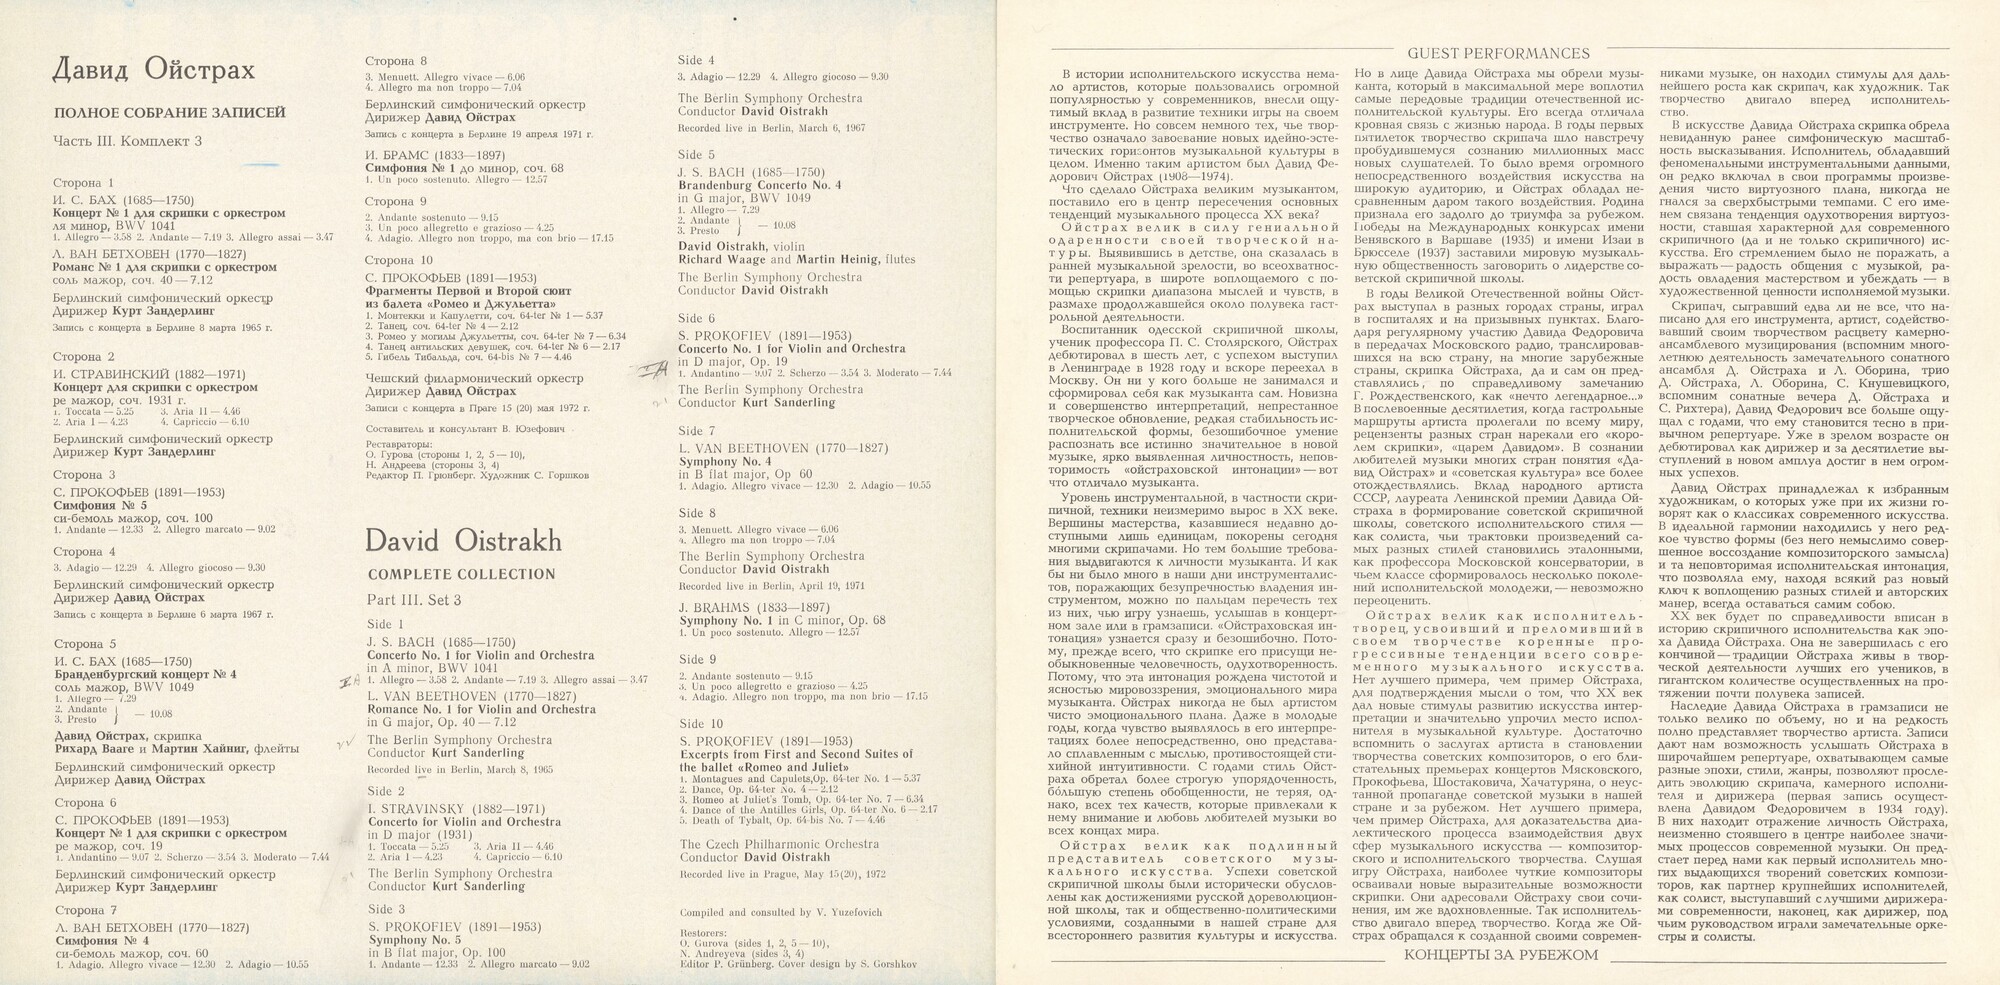 Давид ОЙСТРАХ. Полное собрание записей. Часть III, комплект 3. Концерты в ГДР и Чехословакии, 1965-1972 г.